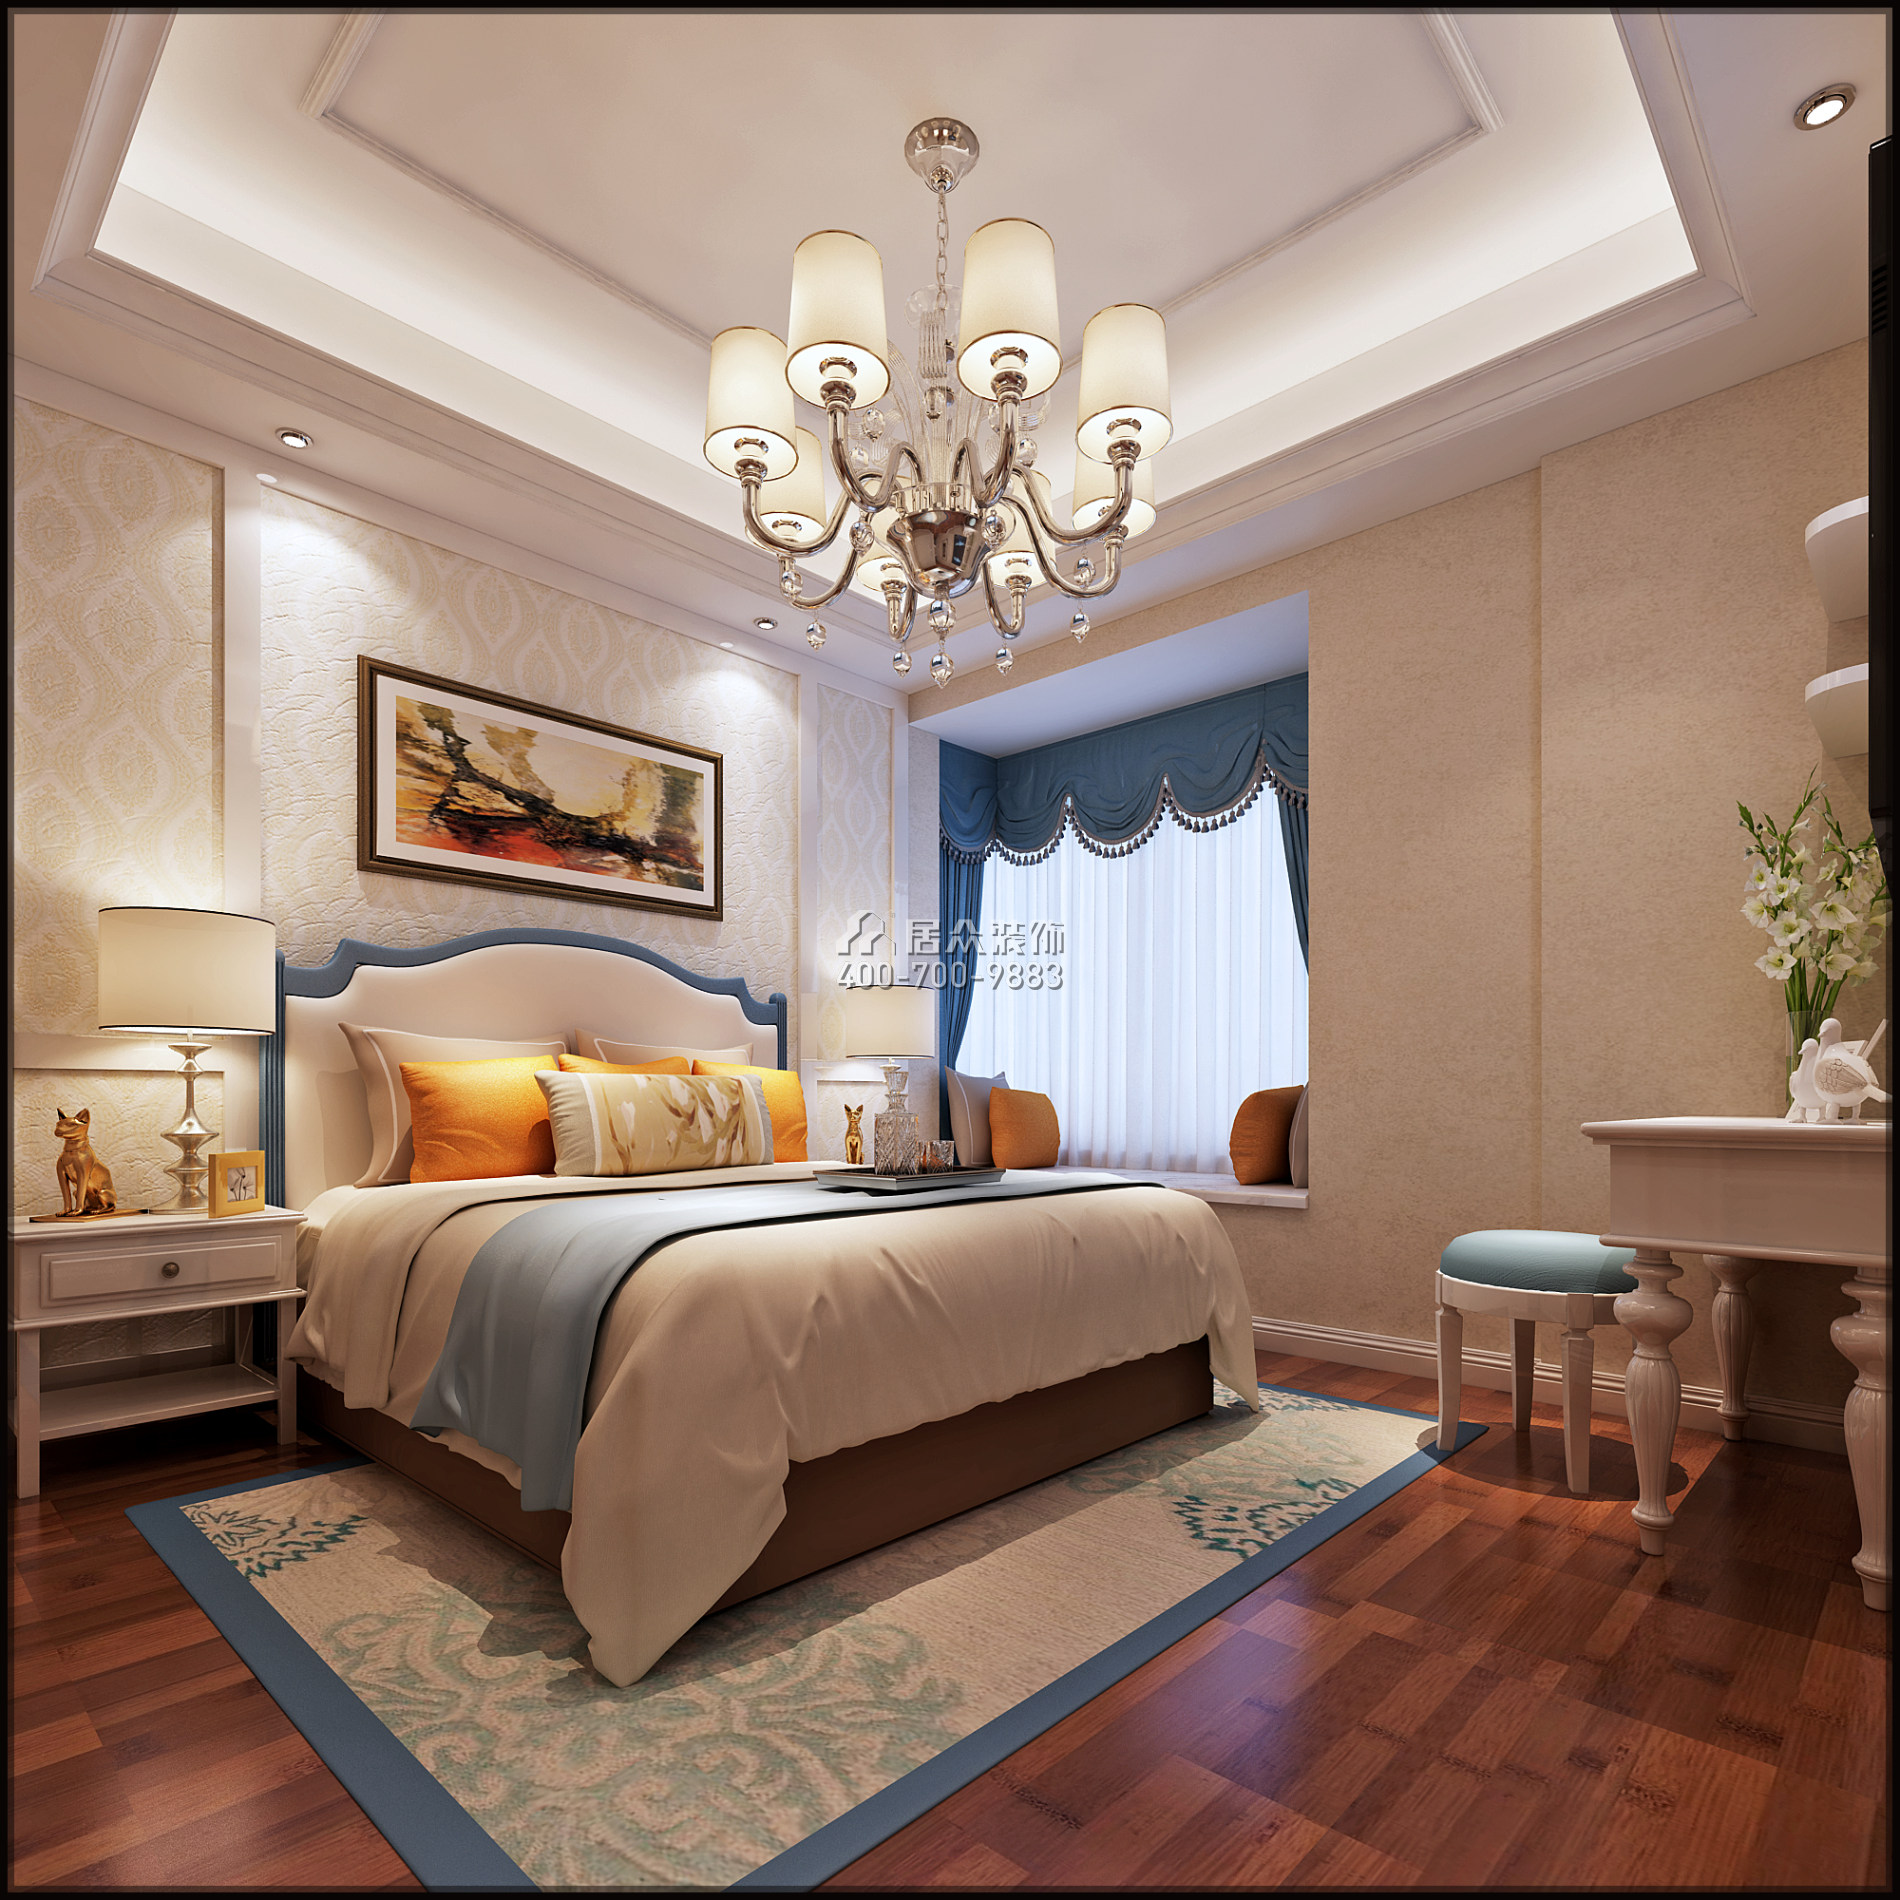 美的君兰江山140平方米欧式风格平层户型卧室装修效果图